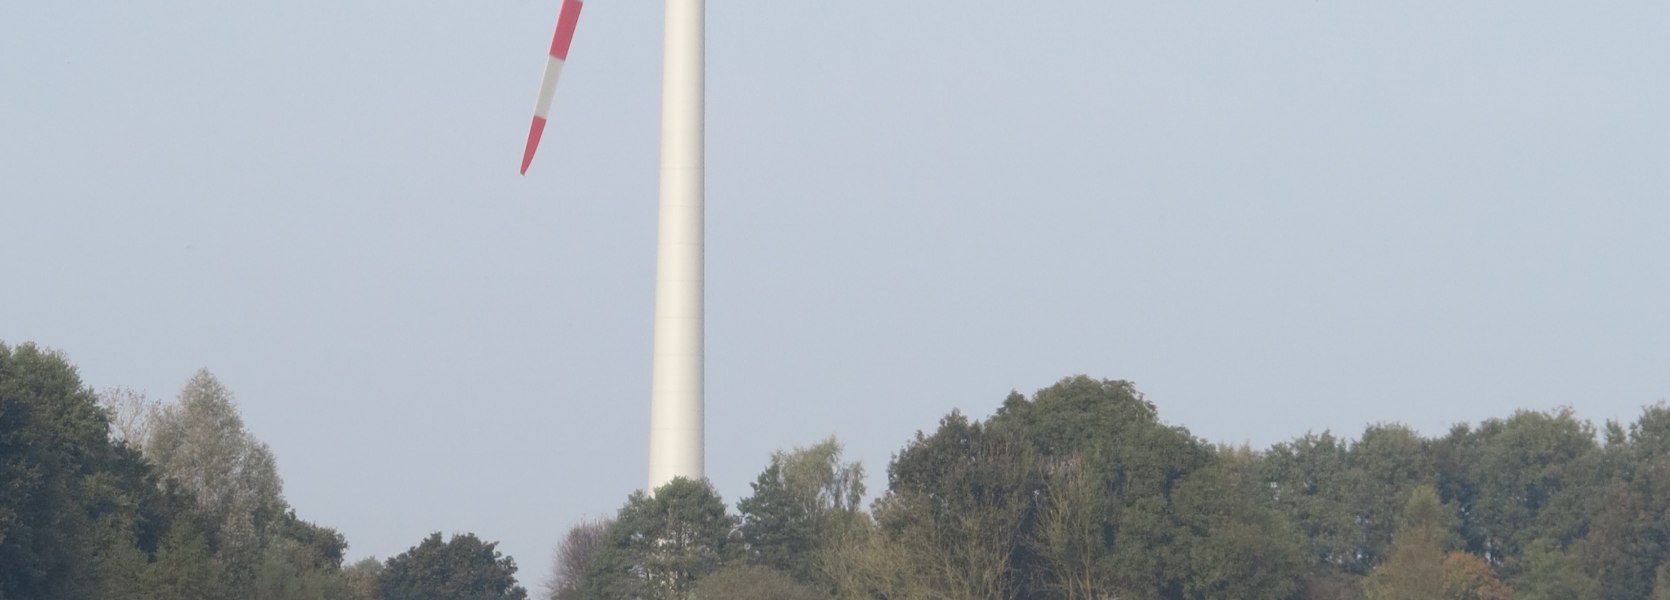 windkraftanlagen-09